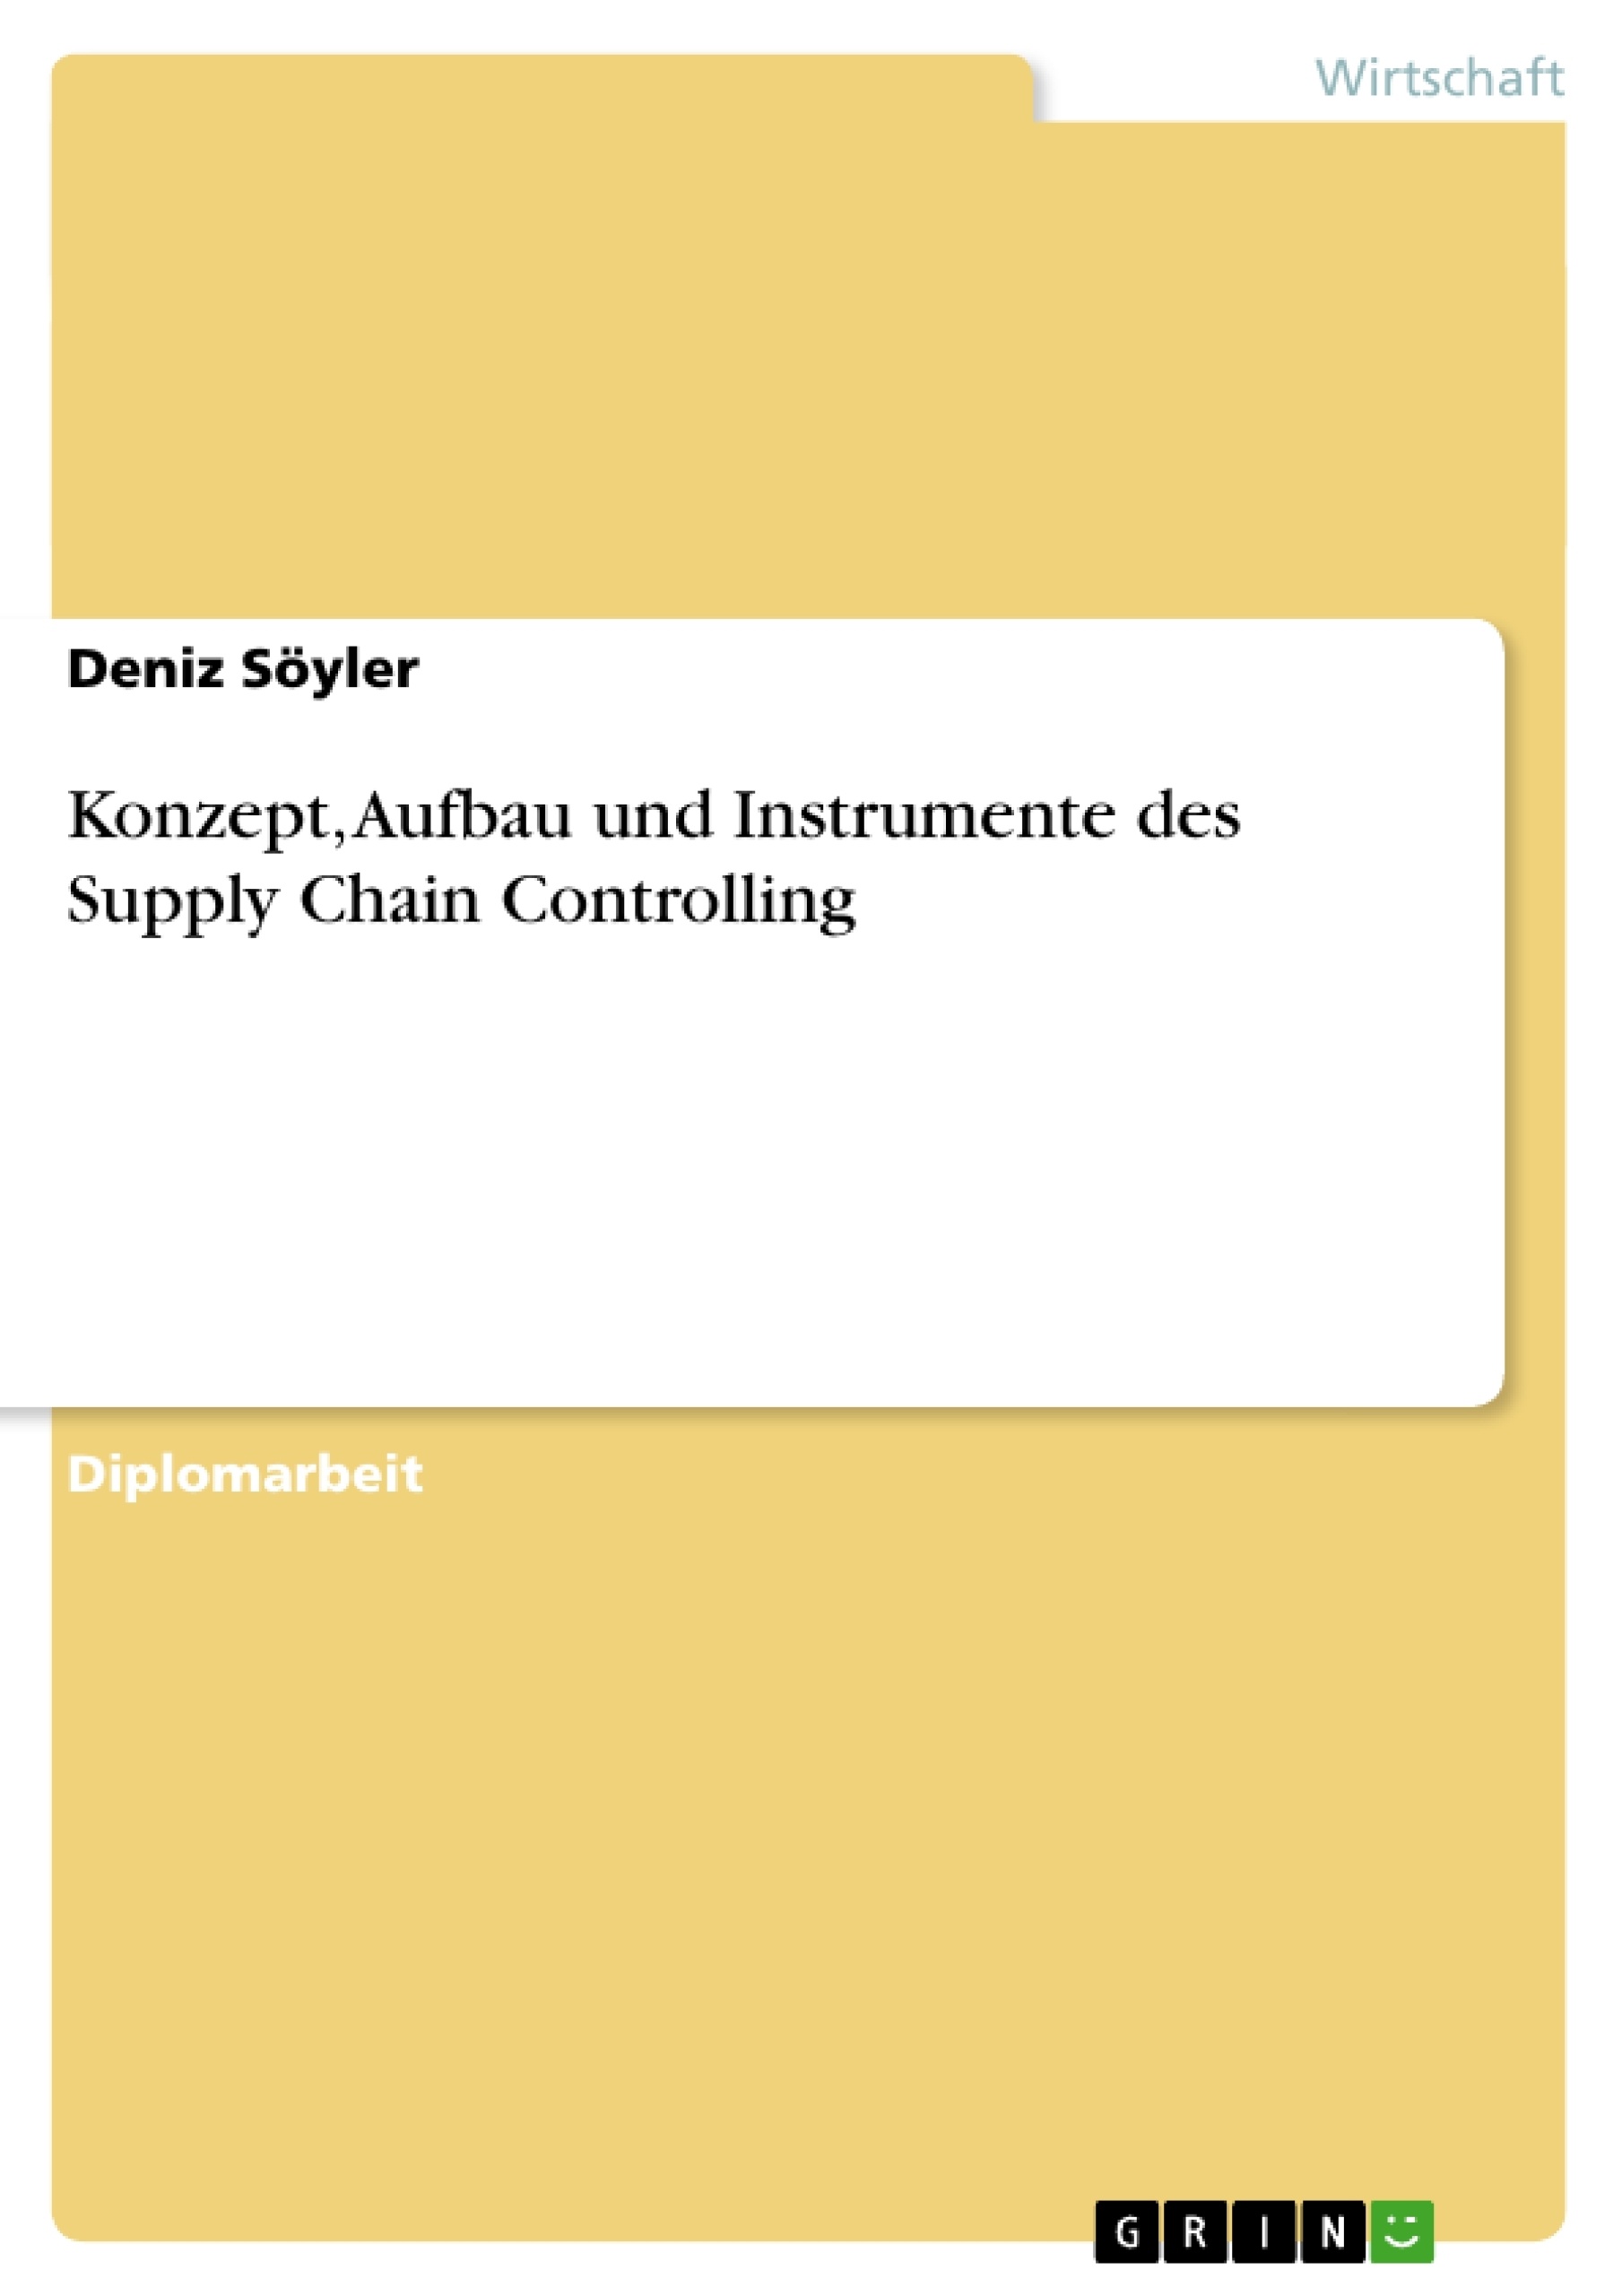 Titre: Konzept, Aufbau und Instrumente des Supply Chain Controlling